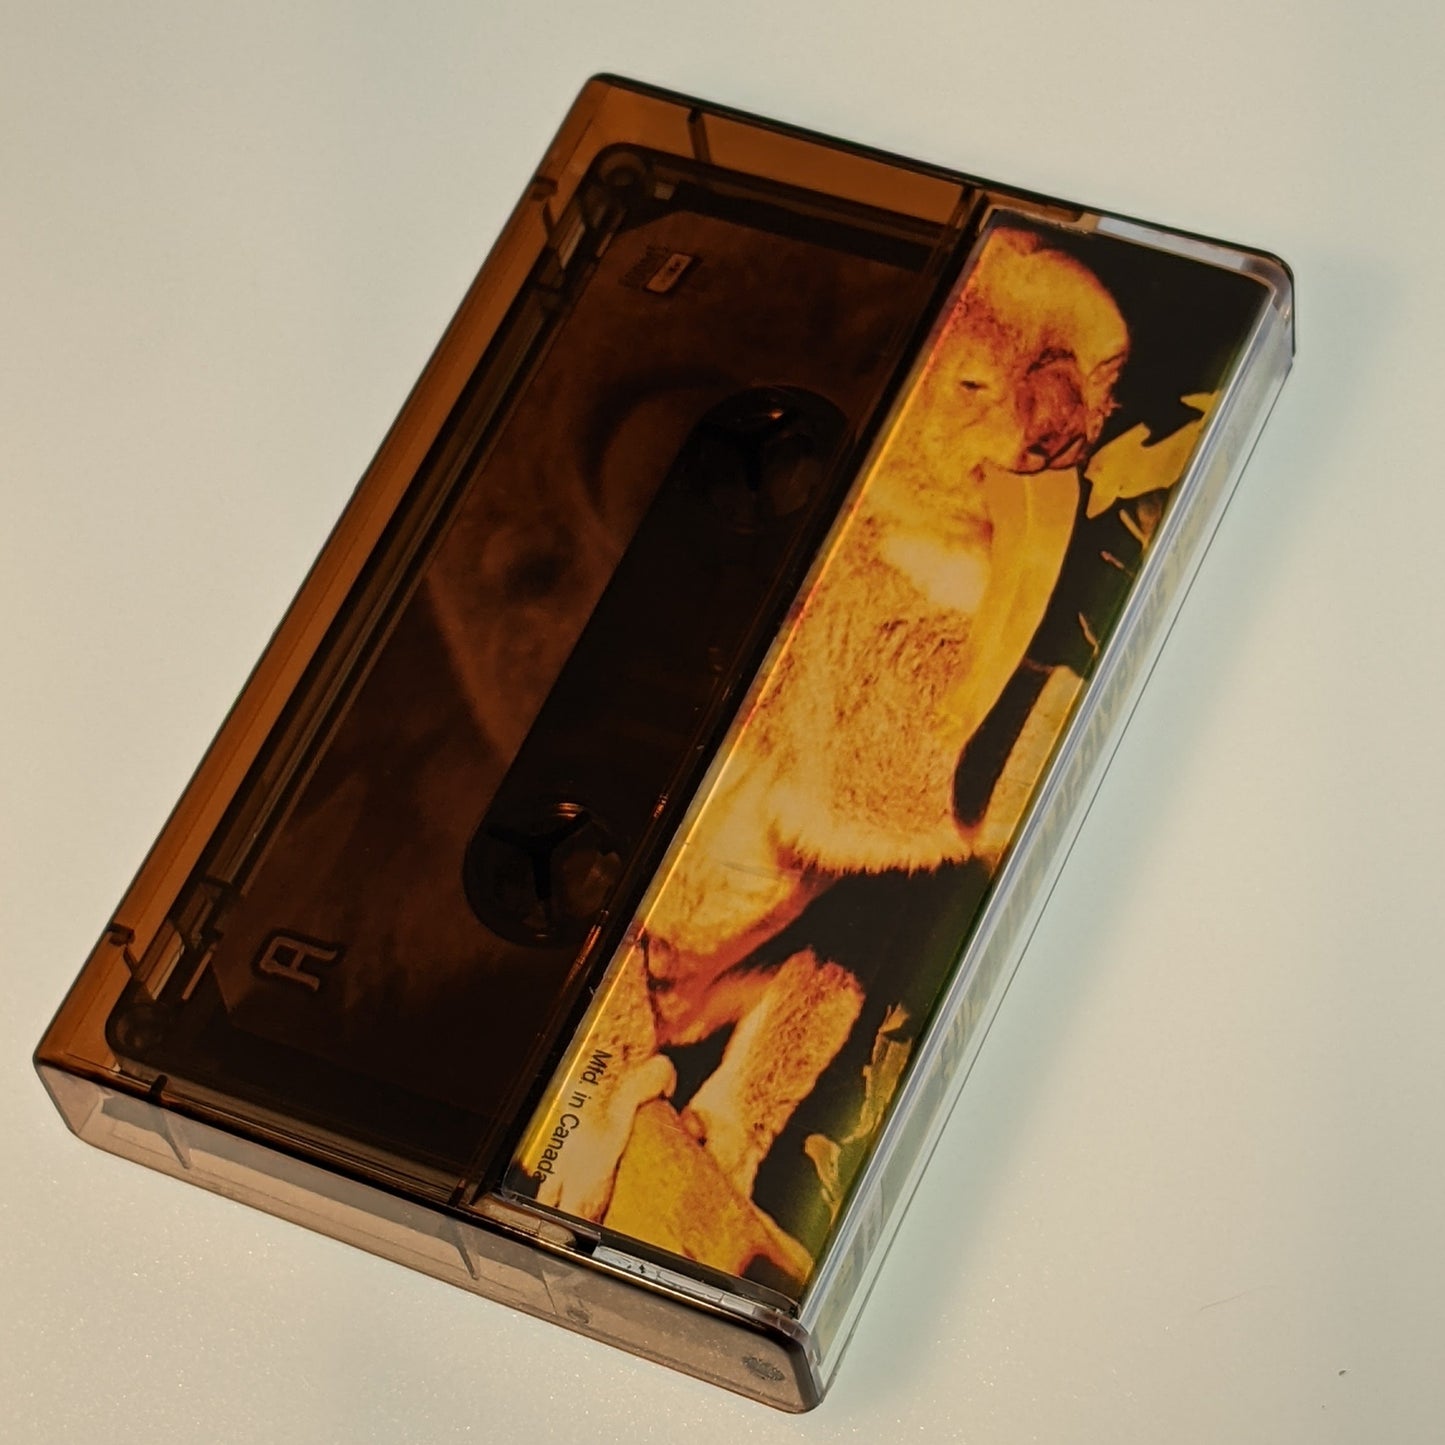 Senz Beats - Eucalize Legalyptus Vol 1 & 2 (Limited Edition Cassette)